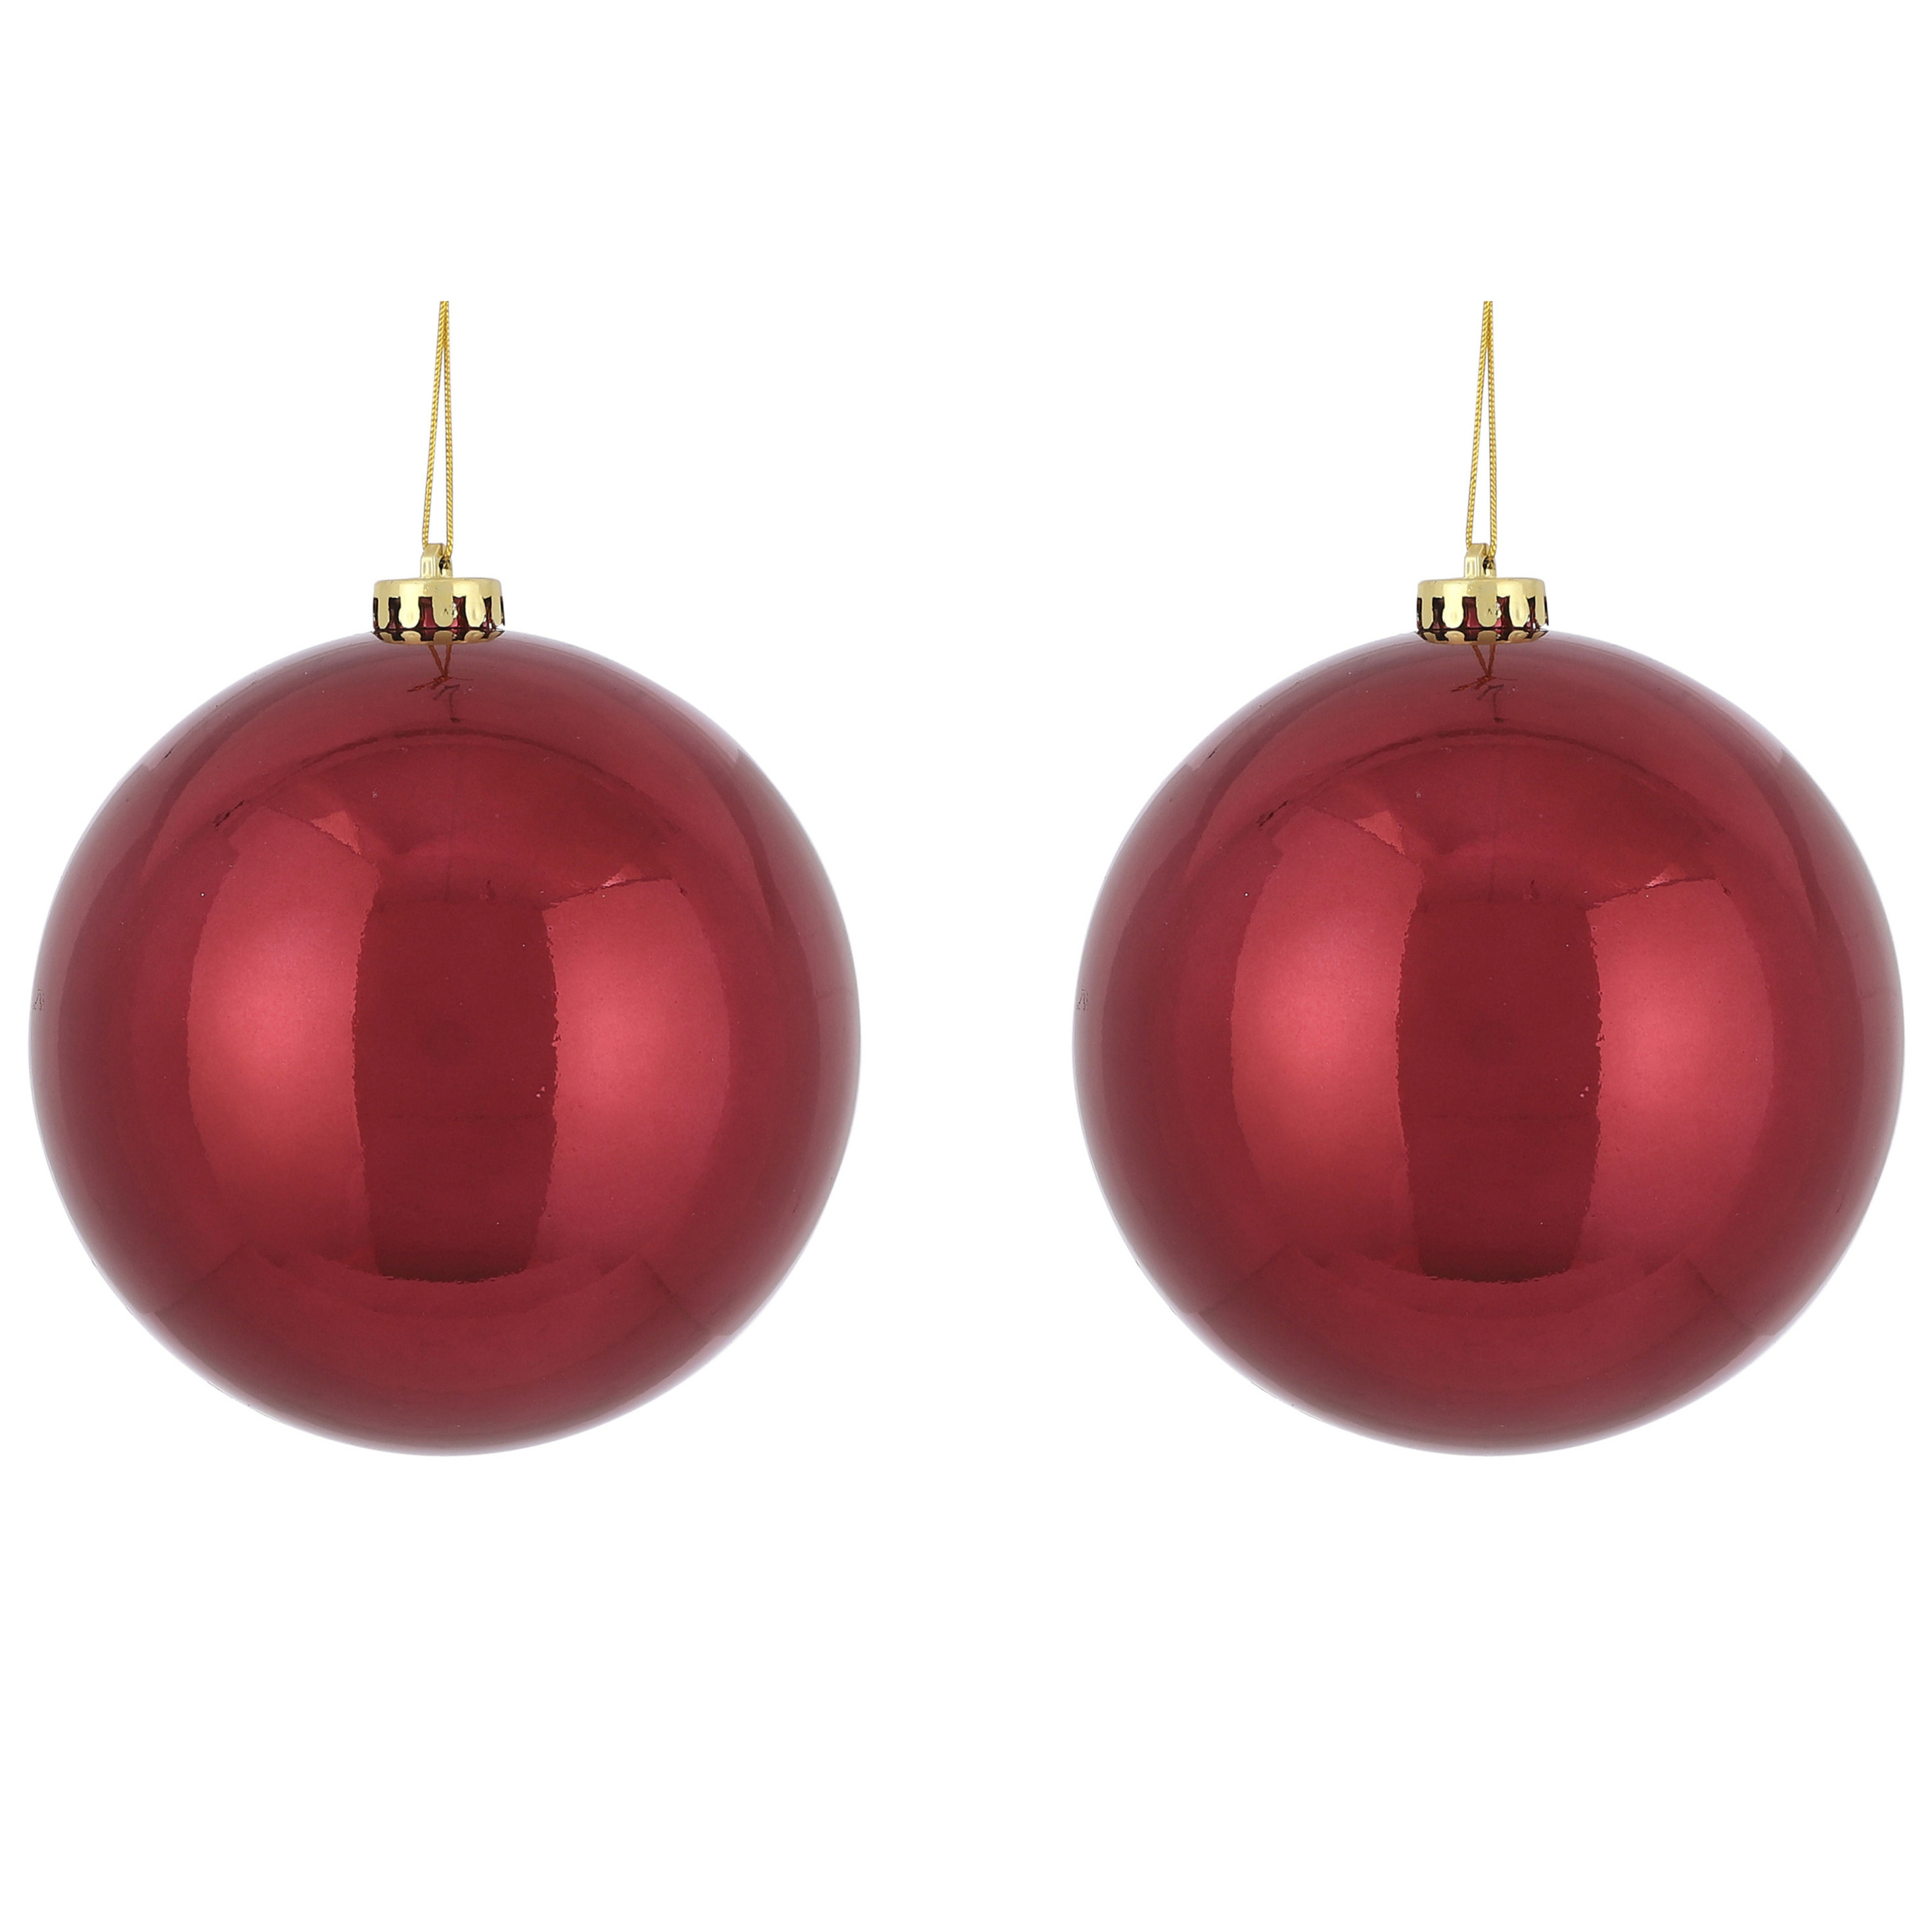 2x Grote kunststof kerstballen donkerrood 15 cm -